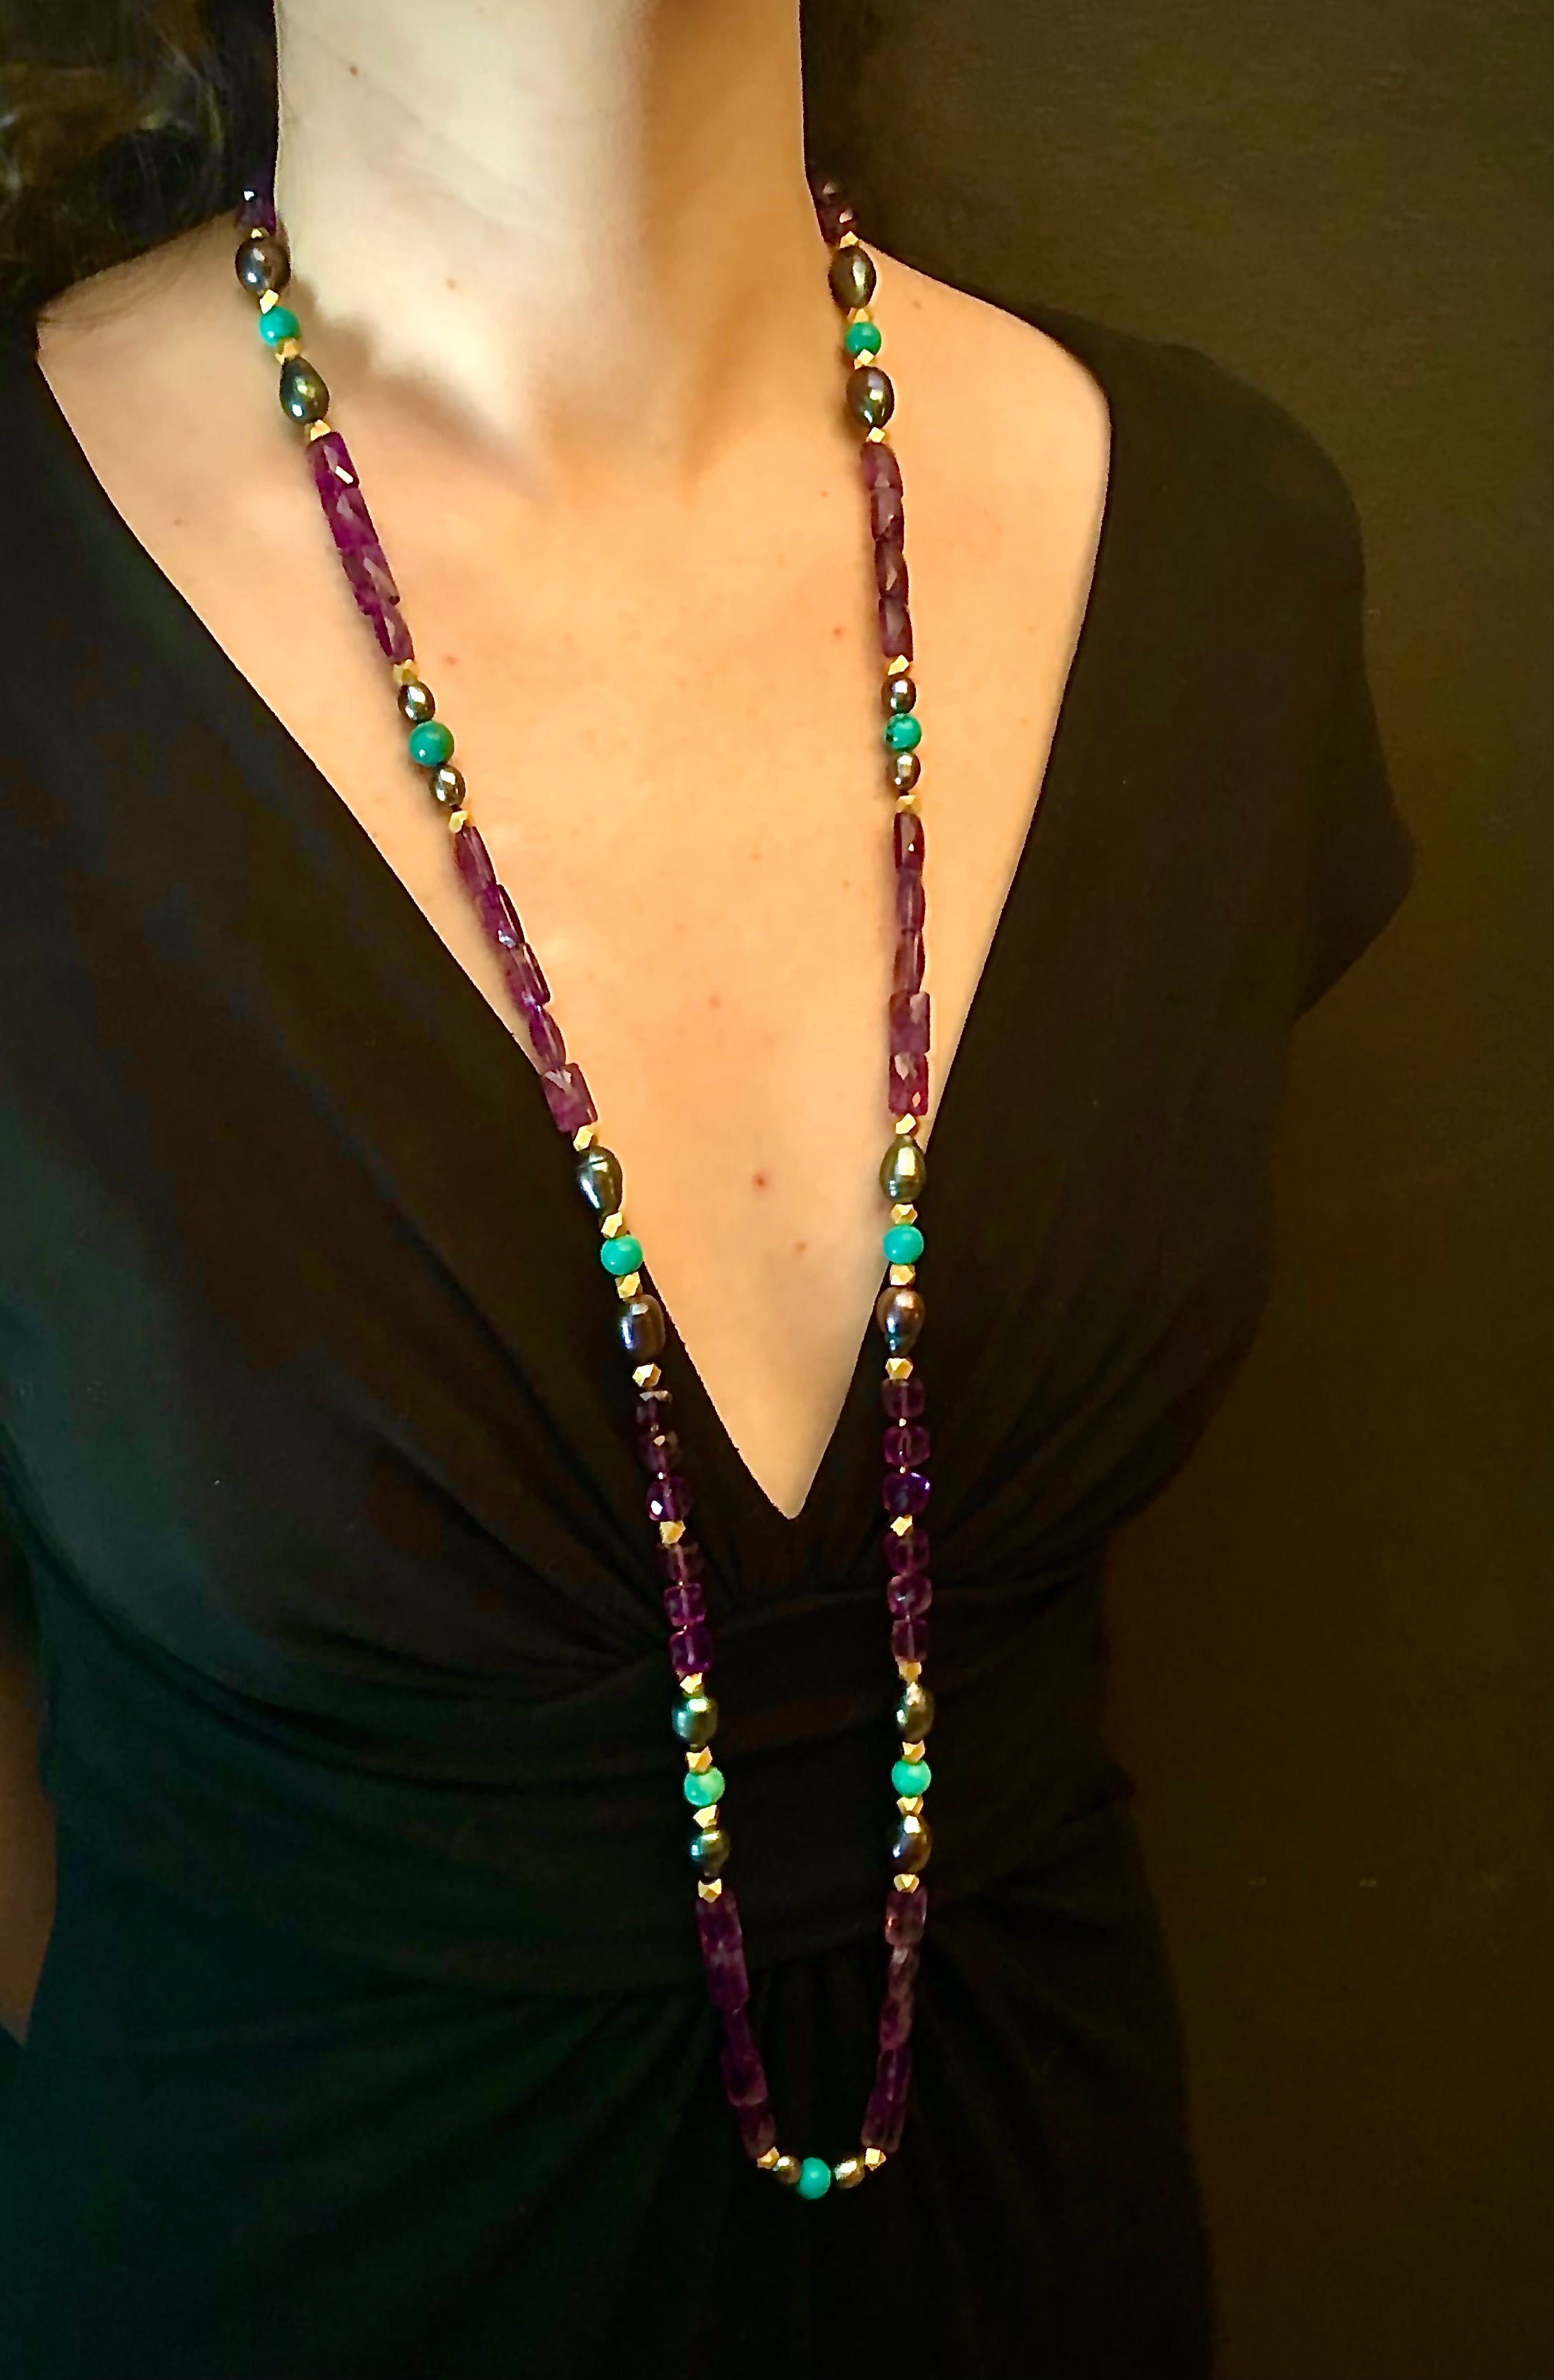 Halskette mit Amethyst, Türkis und schwarzer Perle